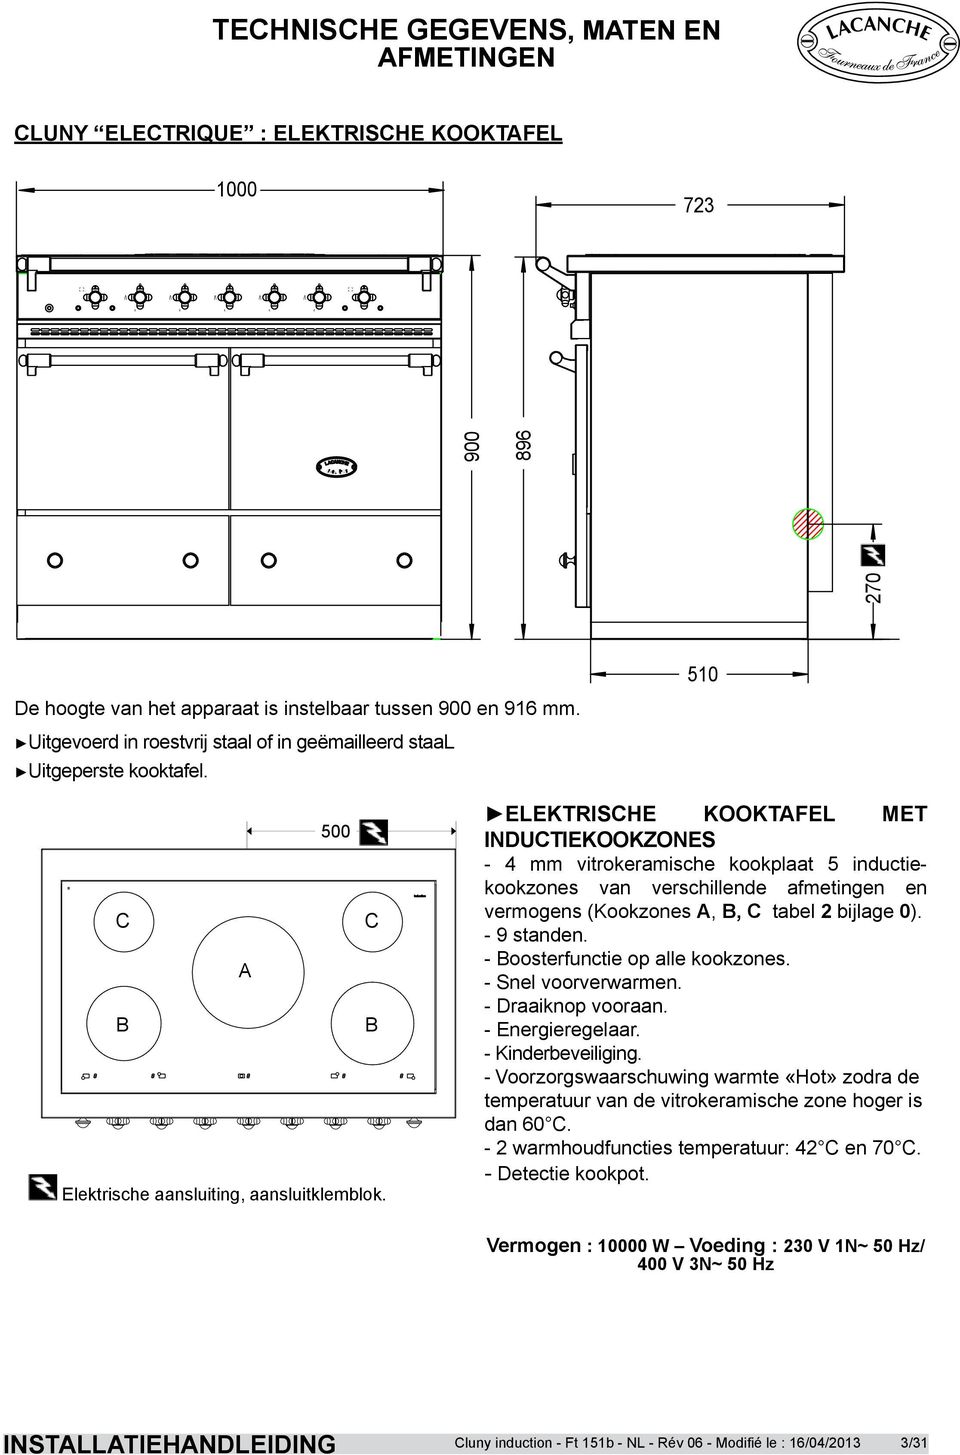 ELEKTRISCHE KOOKTAFEL MET INDUCTIEKOOKZONES - 4 mm vitrokeramische kookplaat 5 inductiekookzones van verschillende afmetingen en vermogens (Kookzones A, B, C tabel 2 bijlage 0). - 9 standen.